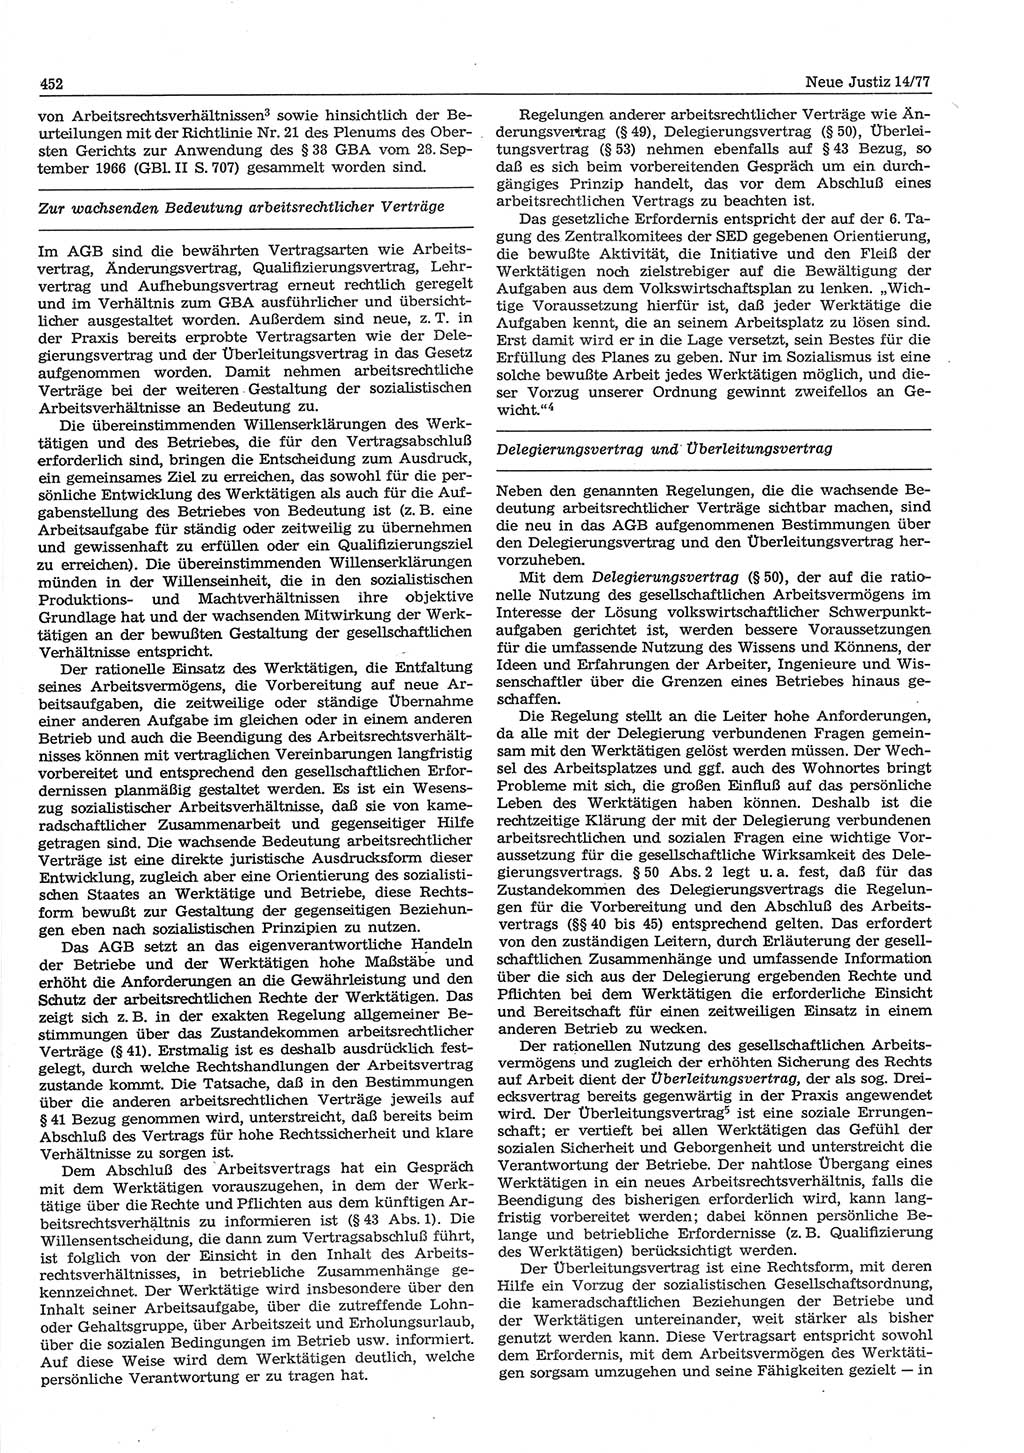 Neue Justiz (NJ), Zeitschrift für Recht und Rechtswissenschaft-Zeitschrift, sozialistisches Recht und Gesetzlichkeit, 31. Jahrgang 1977, Seite 452 (NJ DDR 1977, S. 452)